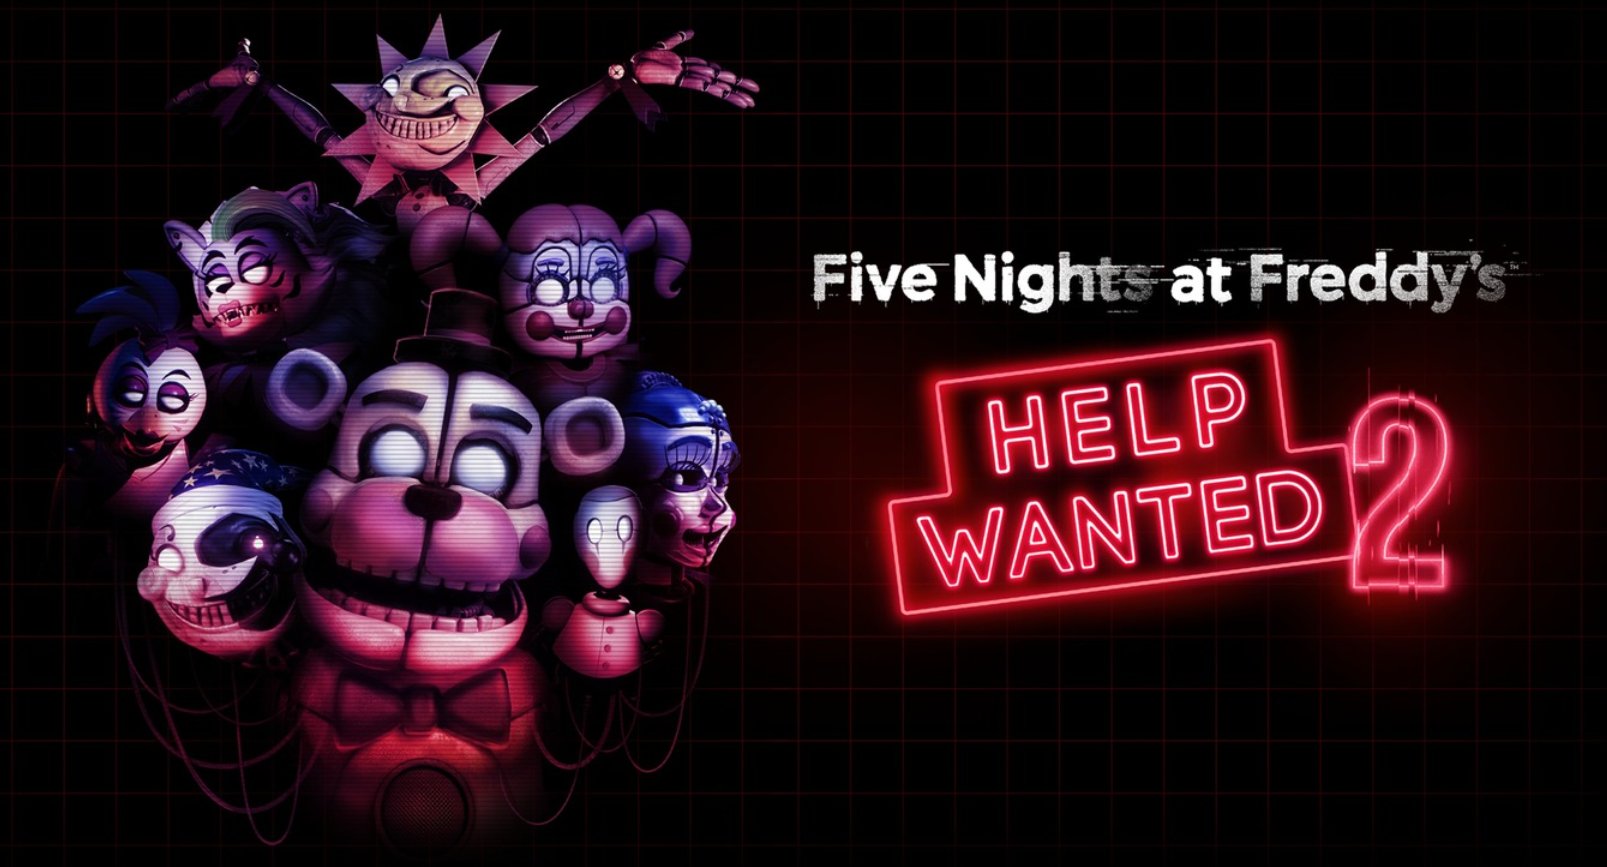 FNAF: Help Wanted 2 Sets December Release On PSVR 2 & Steam